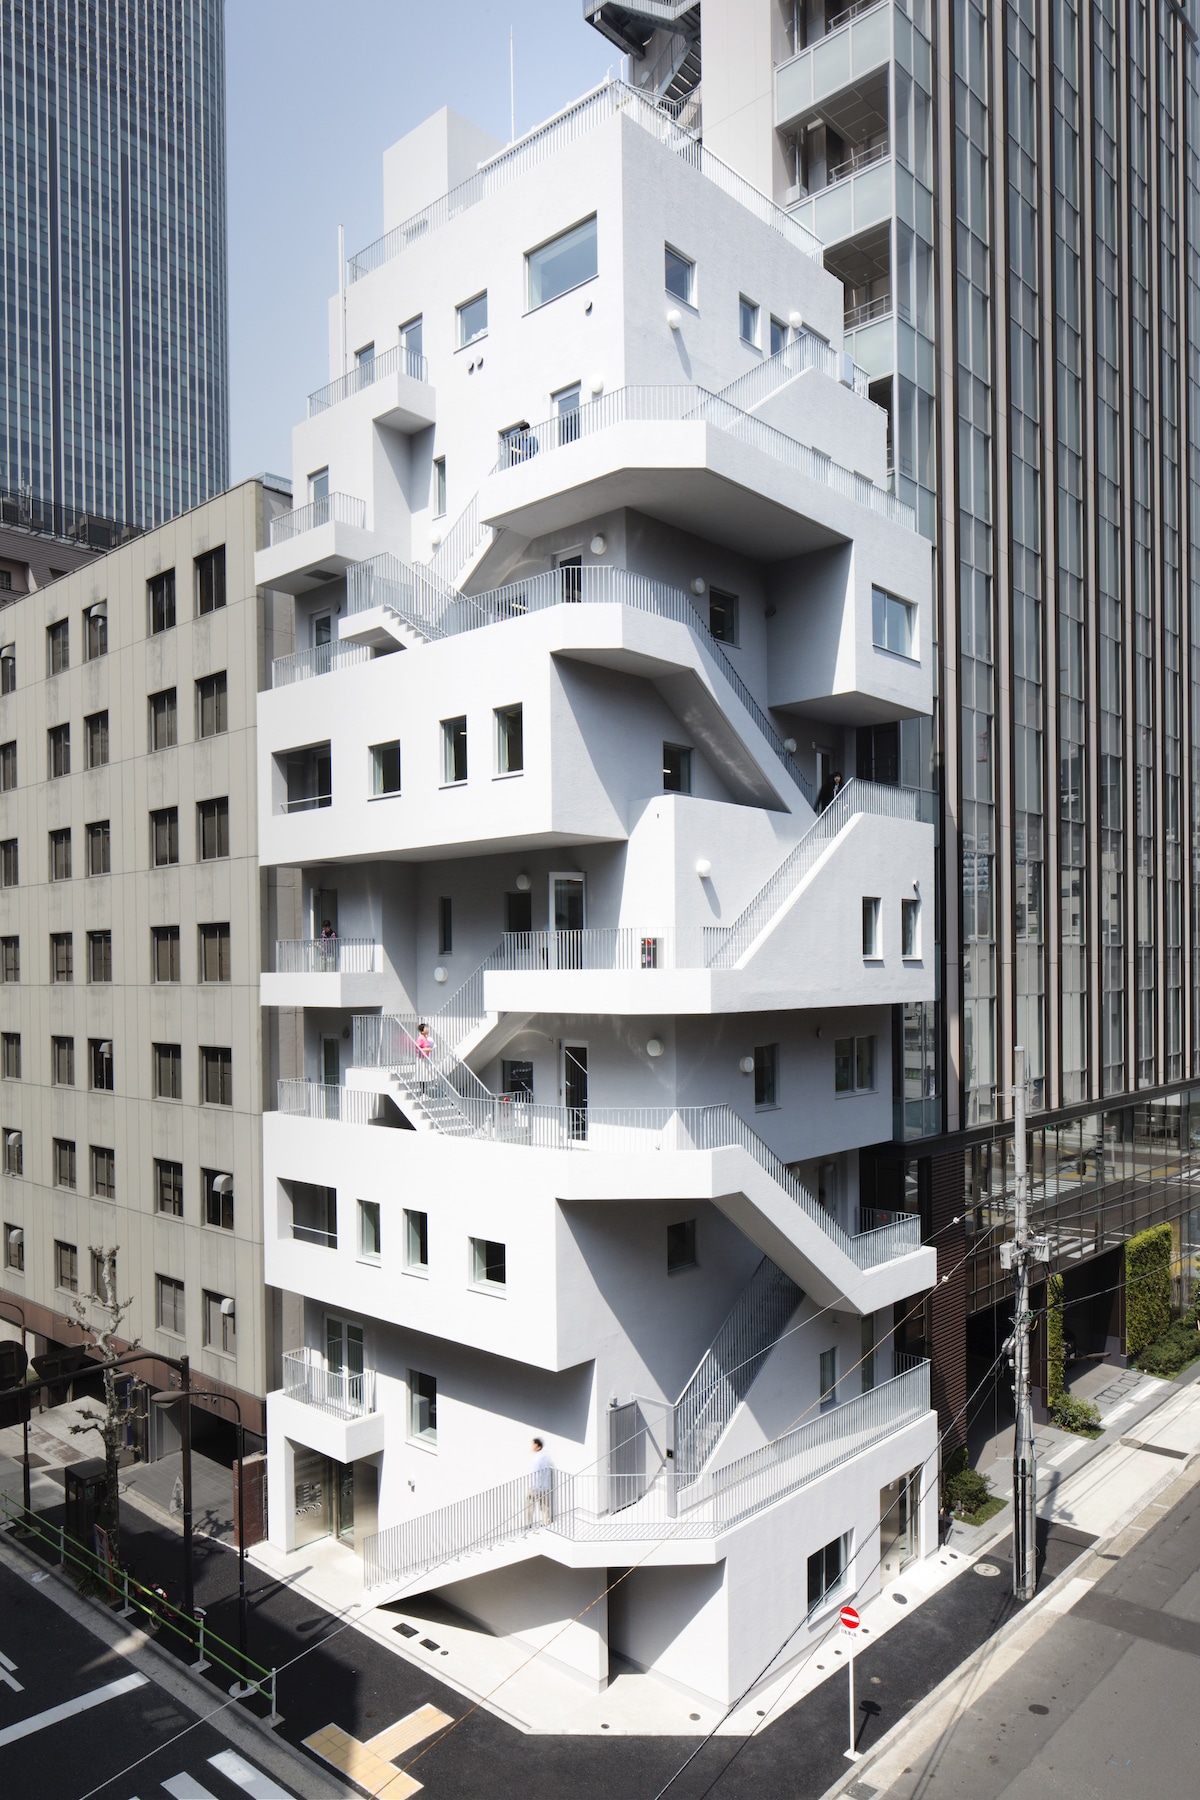 ARAKAWA Office Building by Nikken Sekkei